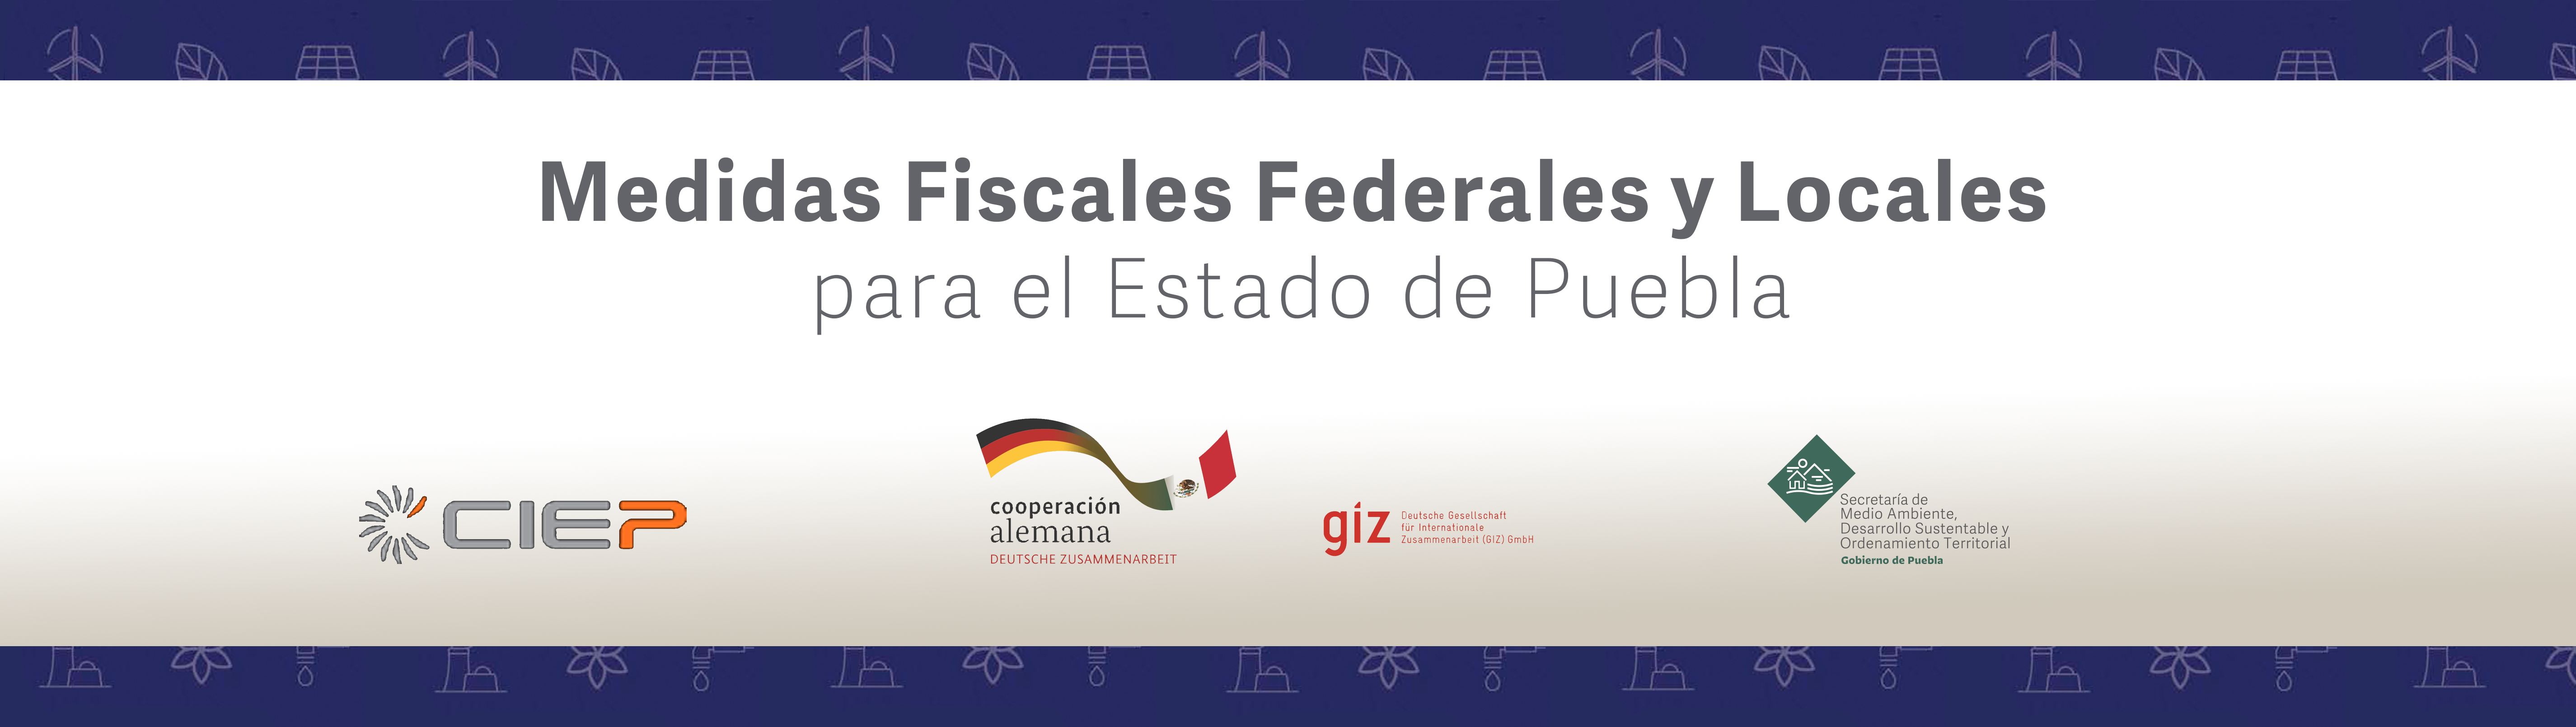 Medidas Fiscales Federales y Locales para el Estado de Puebla